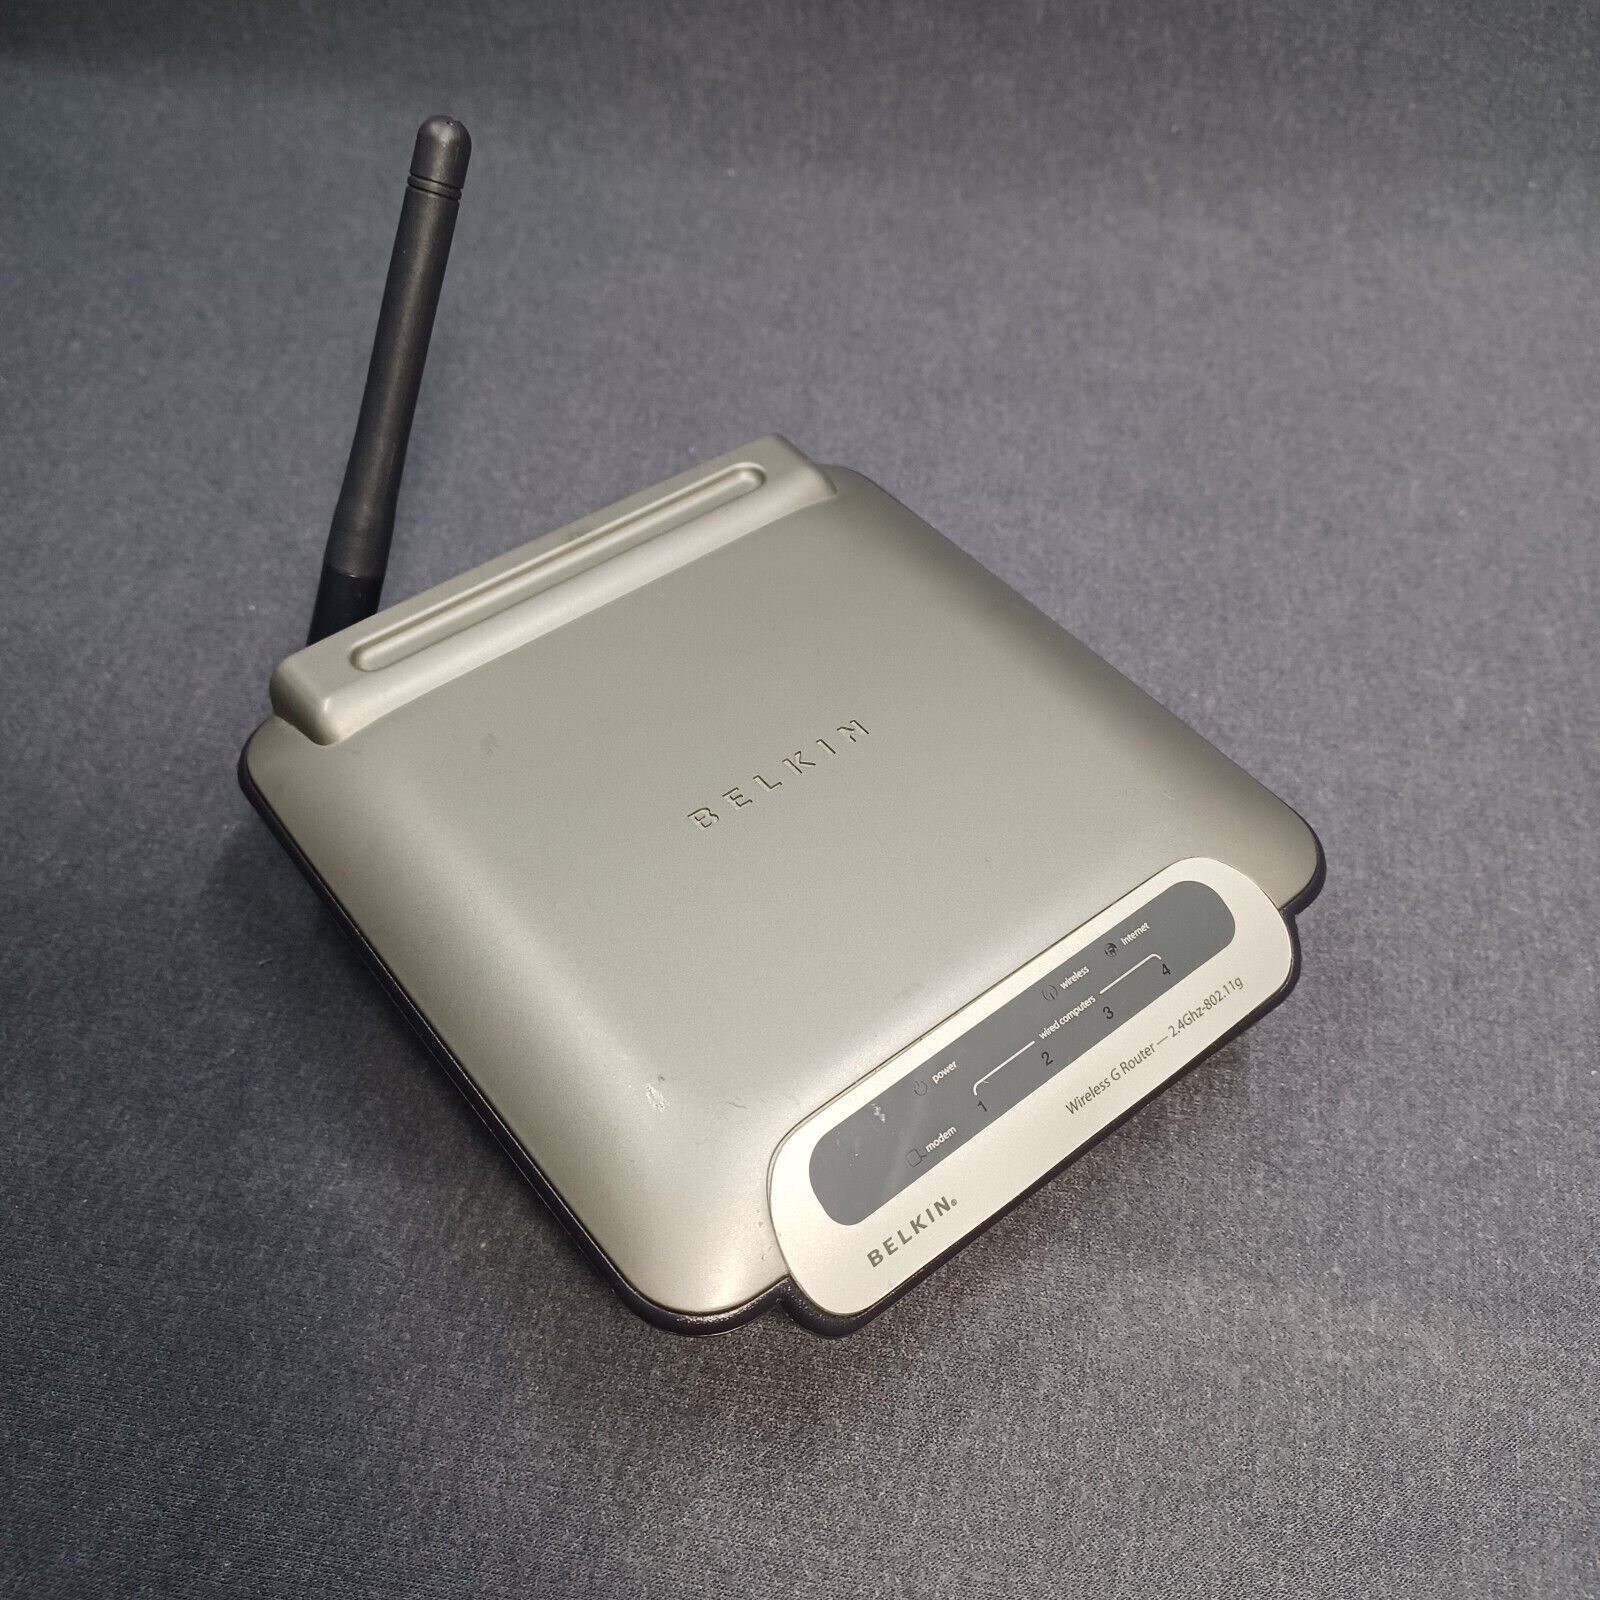 Belkin Mini Wireless G Router ONLY F5D7230-4 2.4 Ghz 802.11g 4-Port Wi-Fi